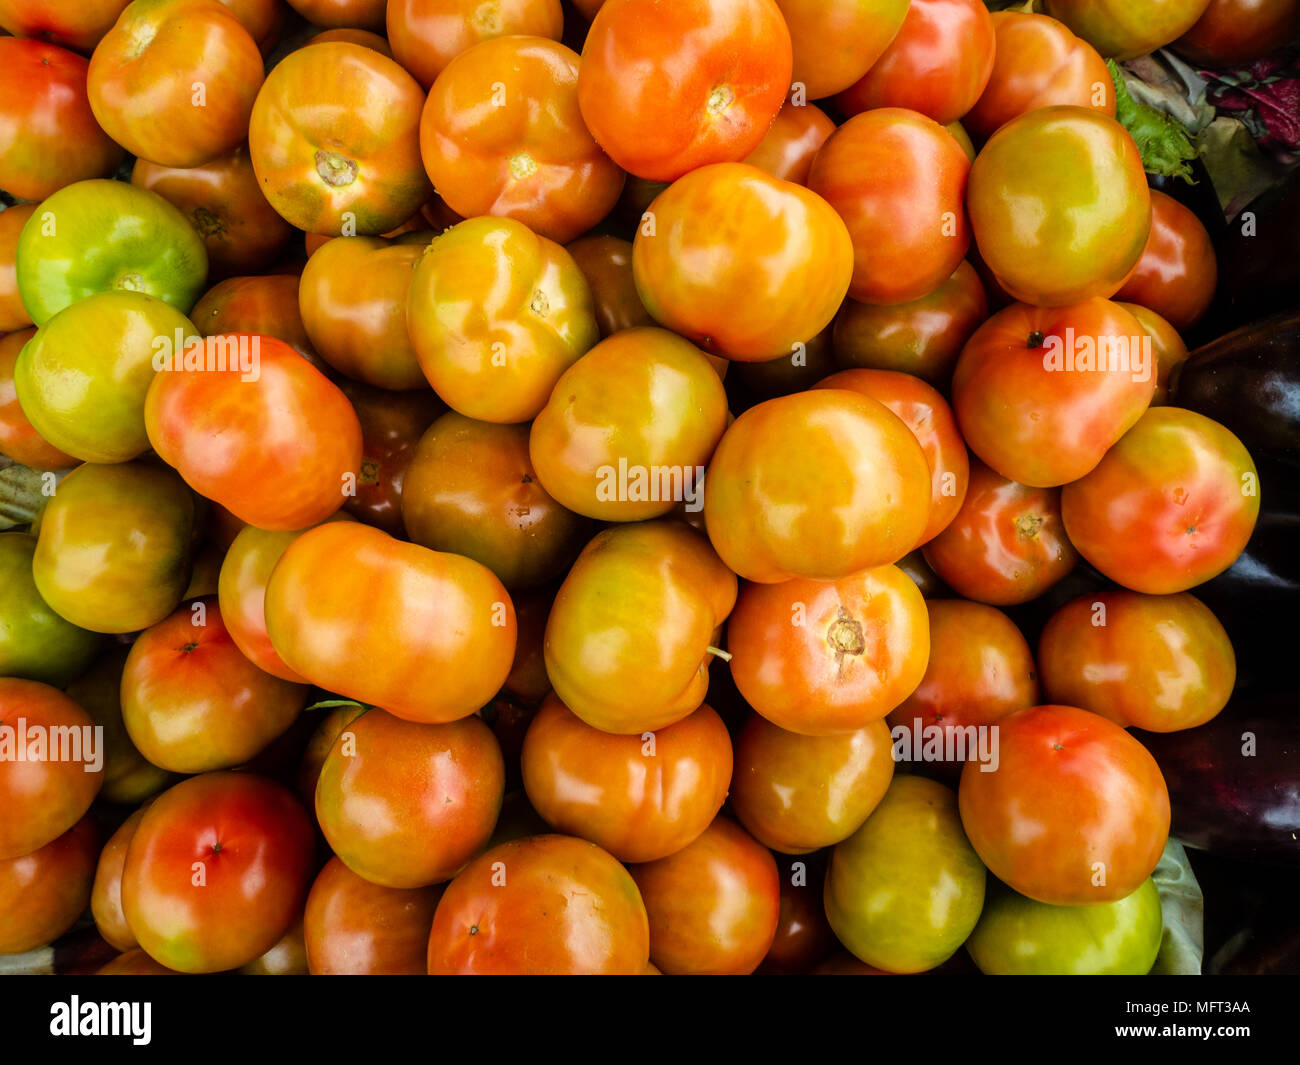 La frutta e la verdura fresca sulla strada del mercato di Alghero, Sardegna, Italia Foto Stock